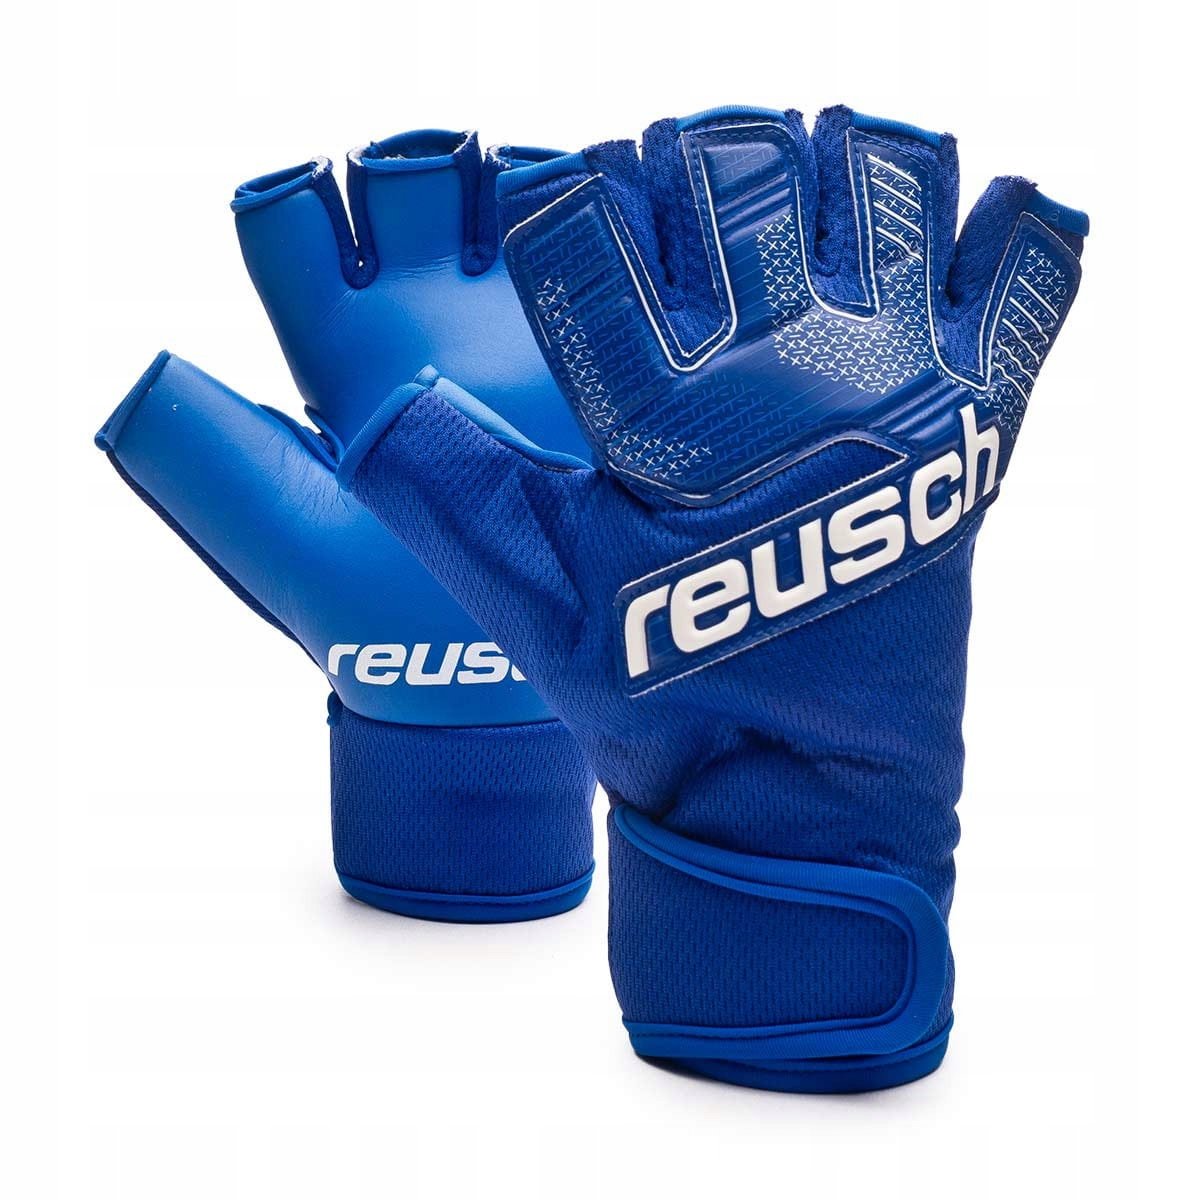 Футзальные вратарские перчатки Reusch Futsal Grip купить